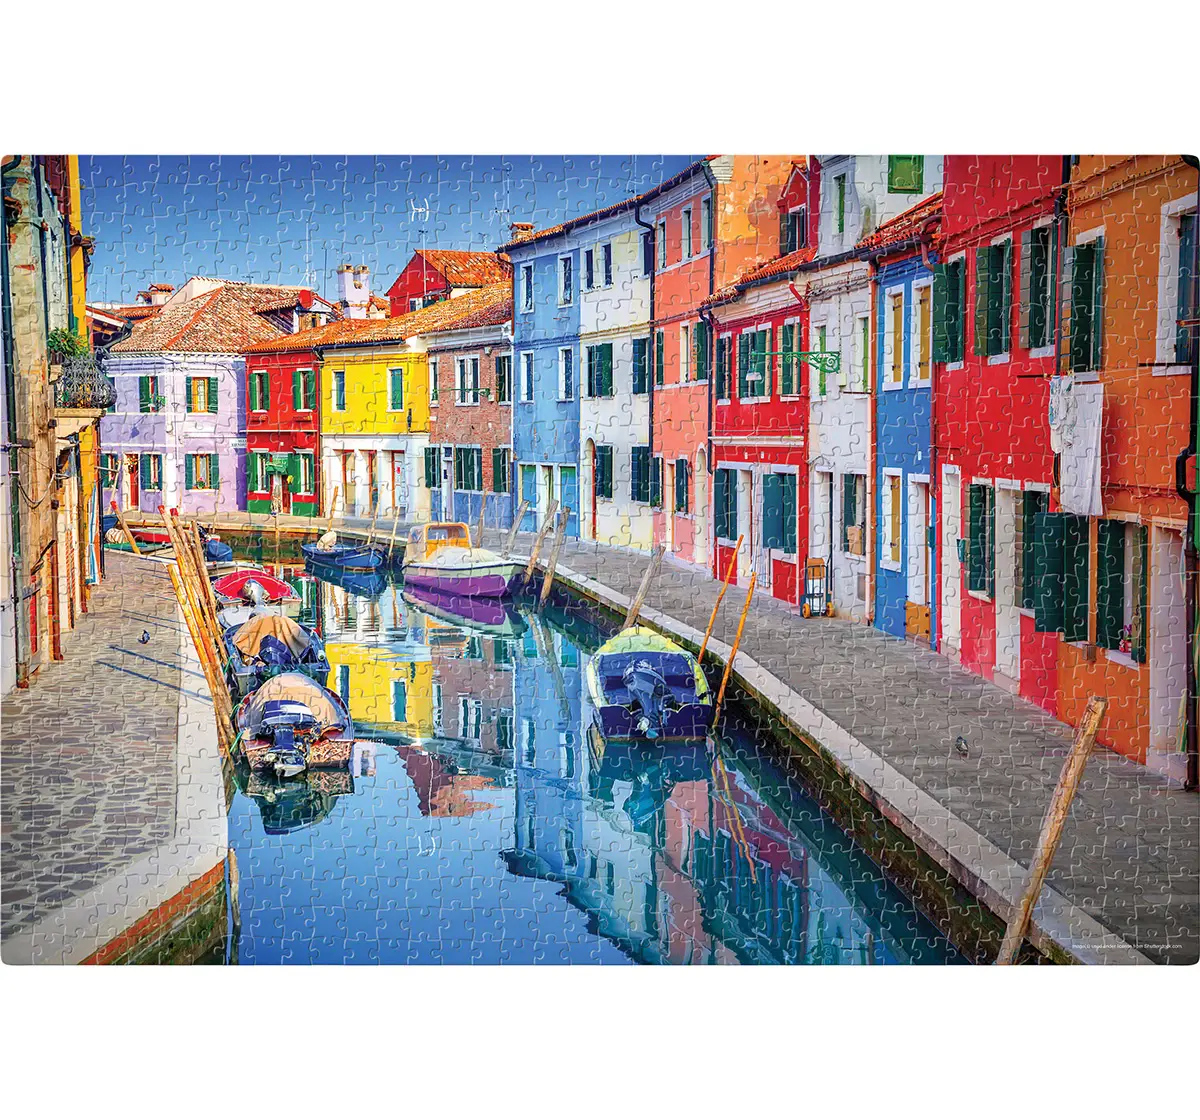 Frank Burano, Venice, Italy Puzzle 1000 Pieces, 14Y+